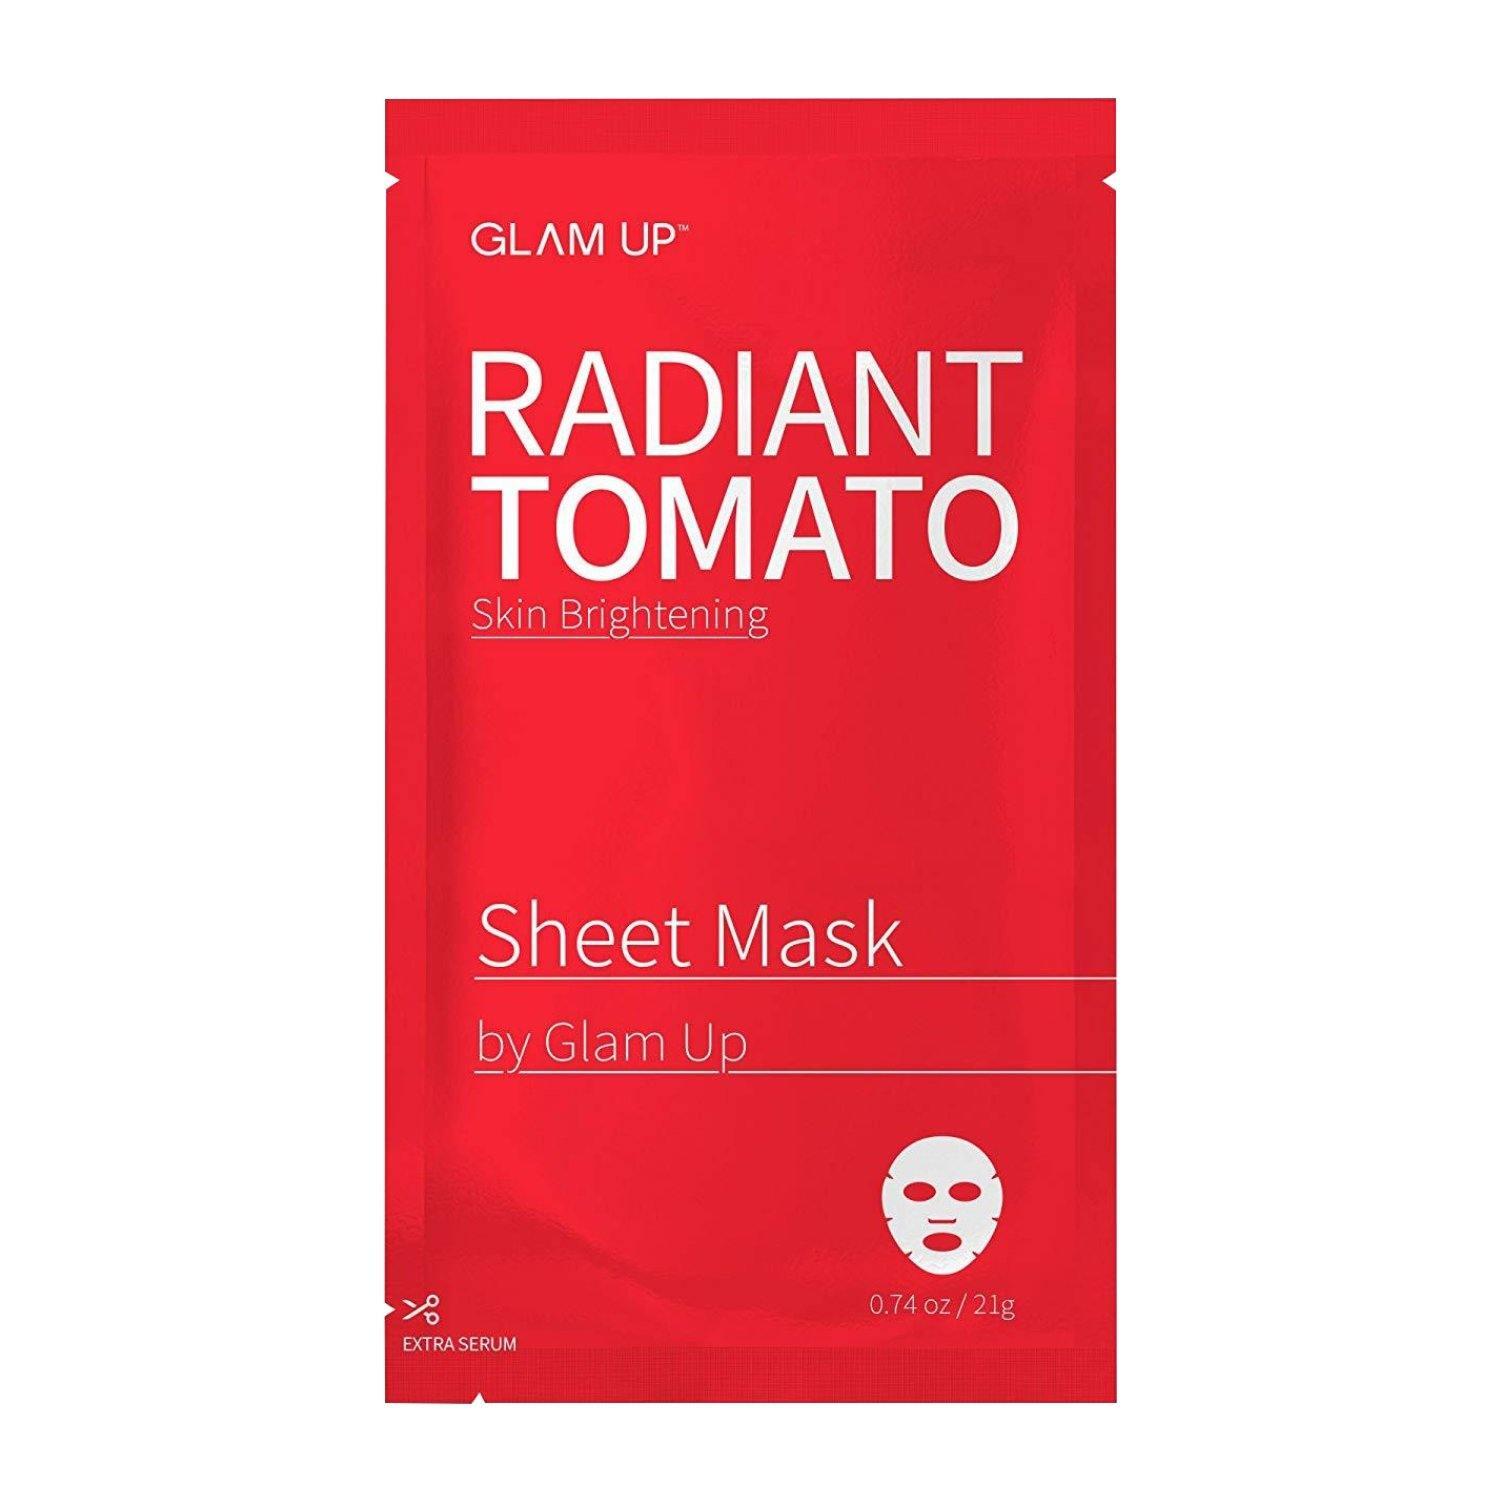 Radiant Tomato Sheet Mask